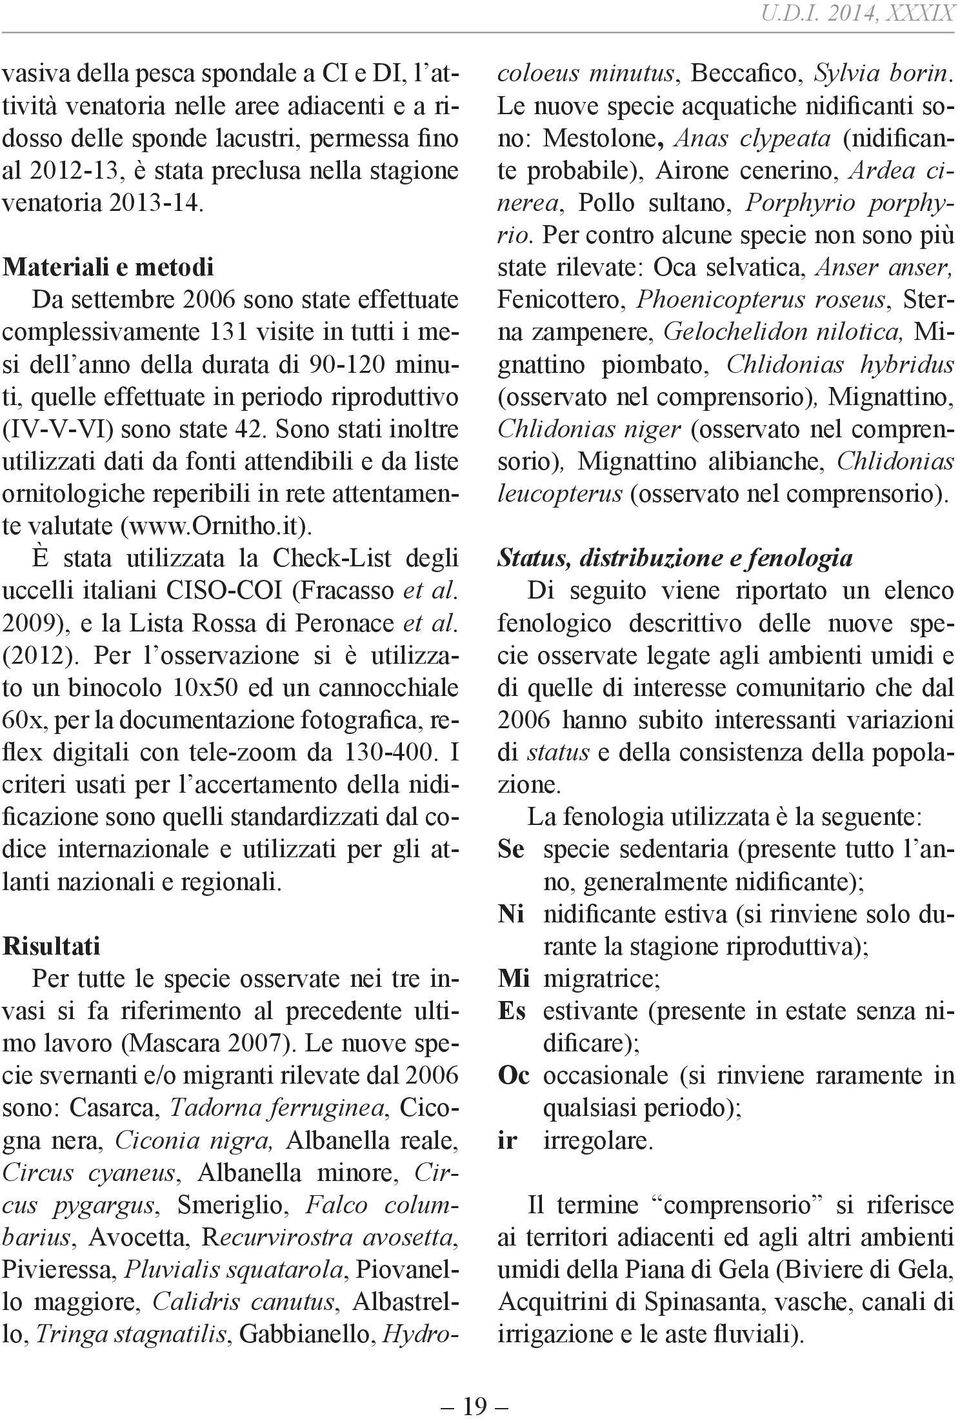 in rete attentamente valutate (www.ornitho.it). È stata utilizzata la Check-List degli uccelli italiani CISO-COI (Fracasso et al. 2009), e la Lista Rossa di Peronace et al. (2012).